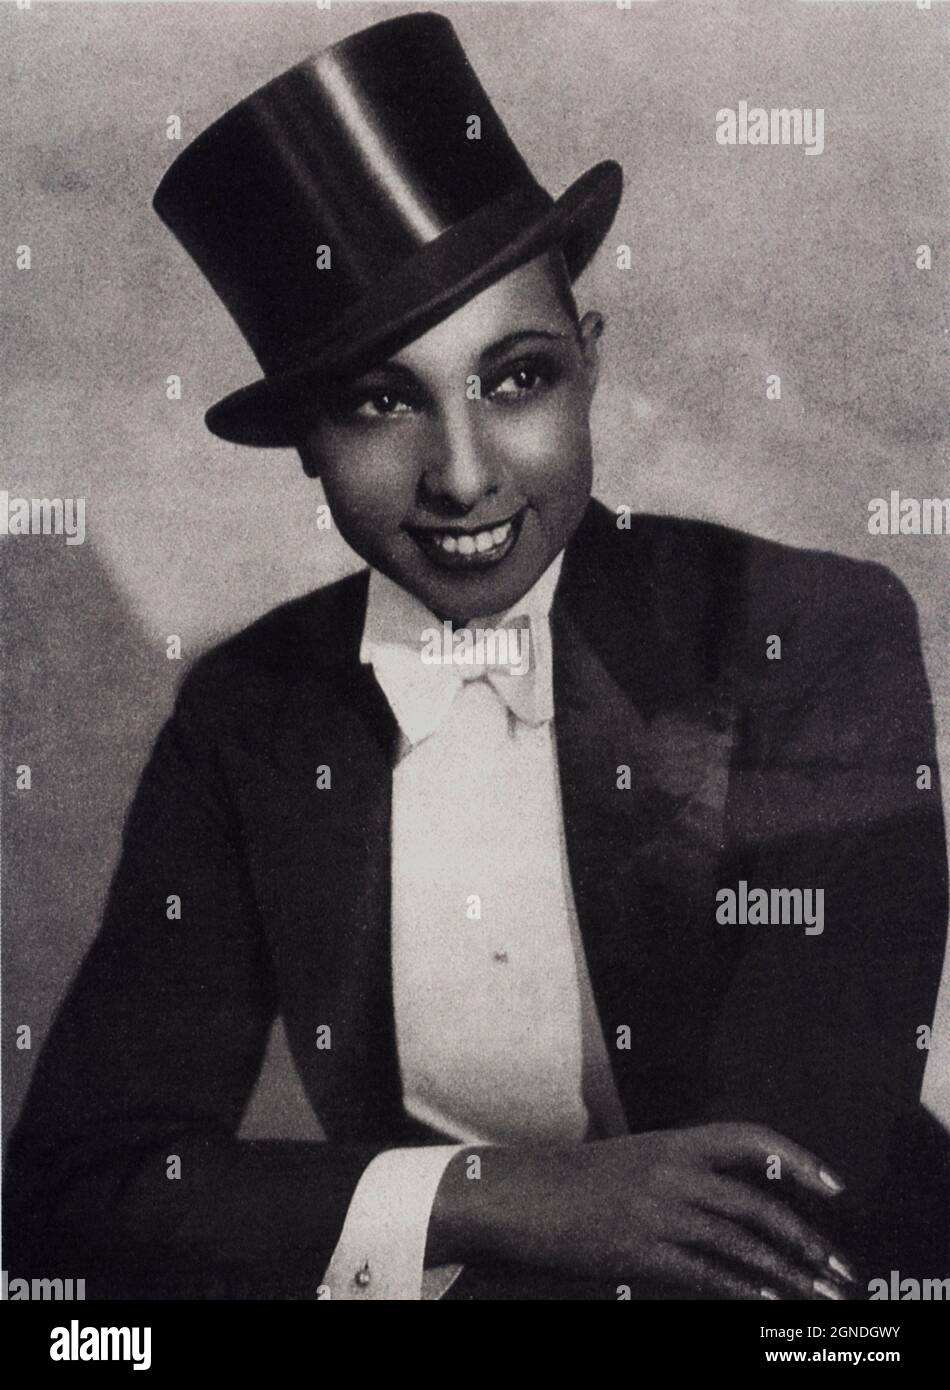 1927 aprox. , FRANCIA : La célebre cantante y bailarina negra americana JOSEPHINE BAKER ( 1906 - 1975 ) Vestido como un hombre - musical - bailarina - cantante - di colore - teatro - teatro - exótico - Parigi - Folies Bergeres - Moulin Rouge - ritratto - retrato - DANZA - DANZA - DANZA - DANZA - JAZZ - imitador masculino - donna vestita da uomo - sombrero de arriba - sombrero de arriba - Tophat - cappello a cilindro - Sonrisa - sorriso ---- Archivio GBB Foto de stock